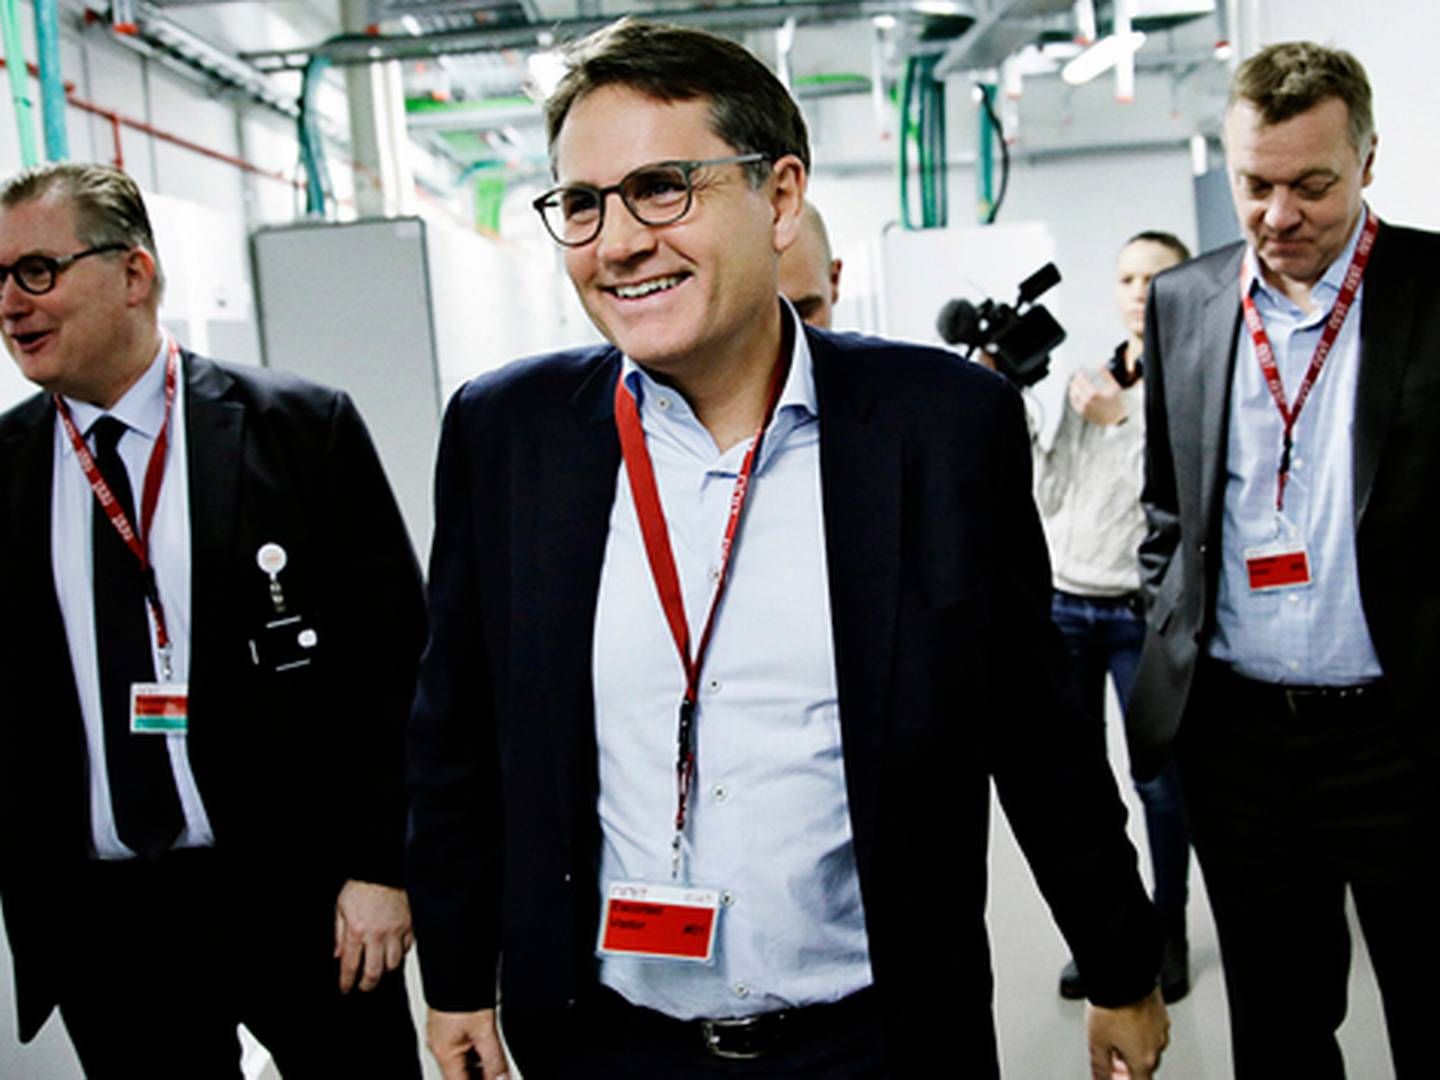 Erhvervsminister Brian Mikkelsen (midt) ved åbningen af NNIT's seneste datacenter, hvor han havde selskab af NNIT's adm. direktør Per Kogut (venstre.) | Foto: PR